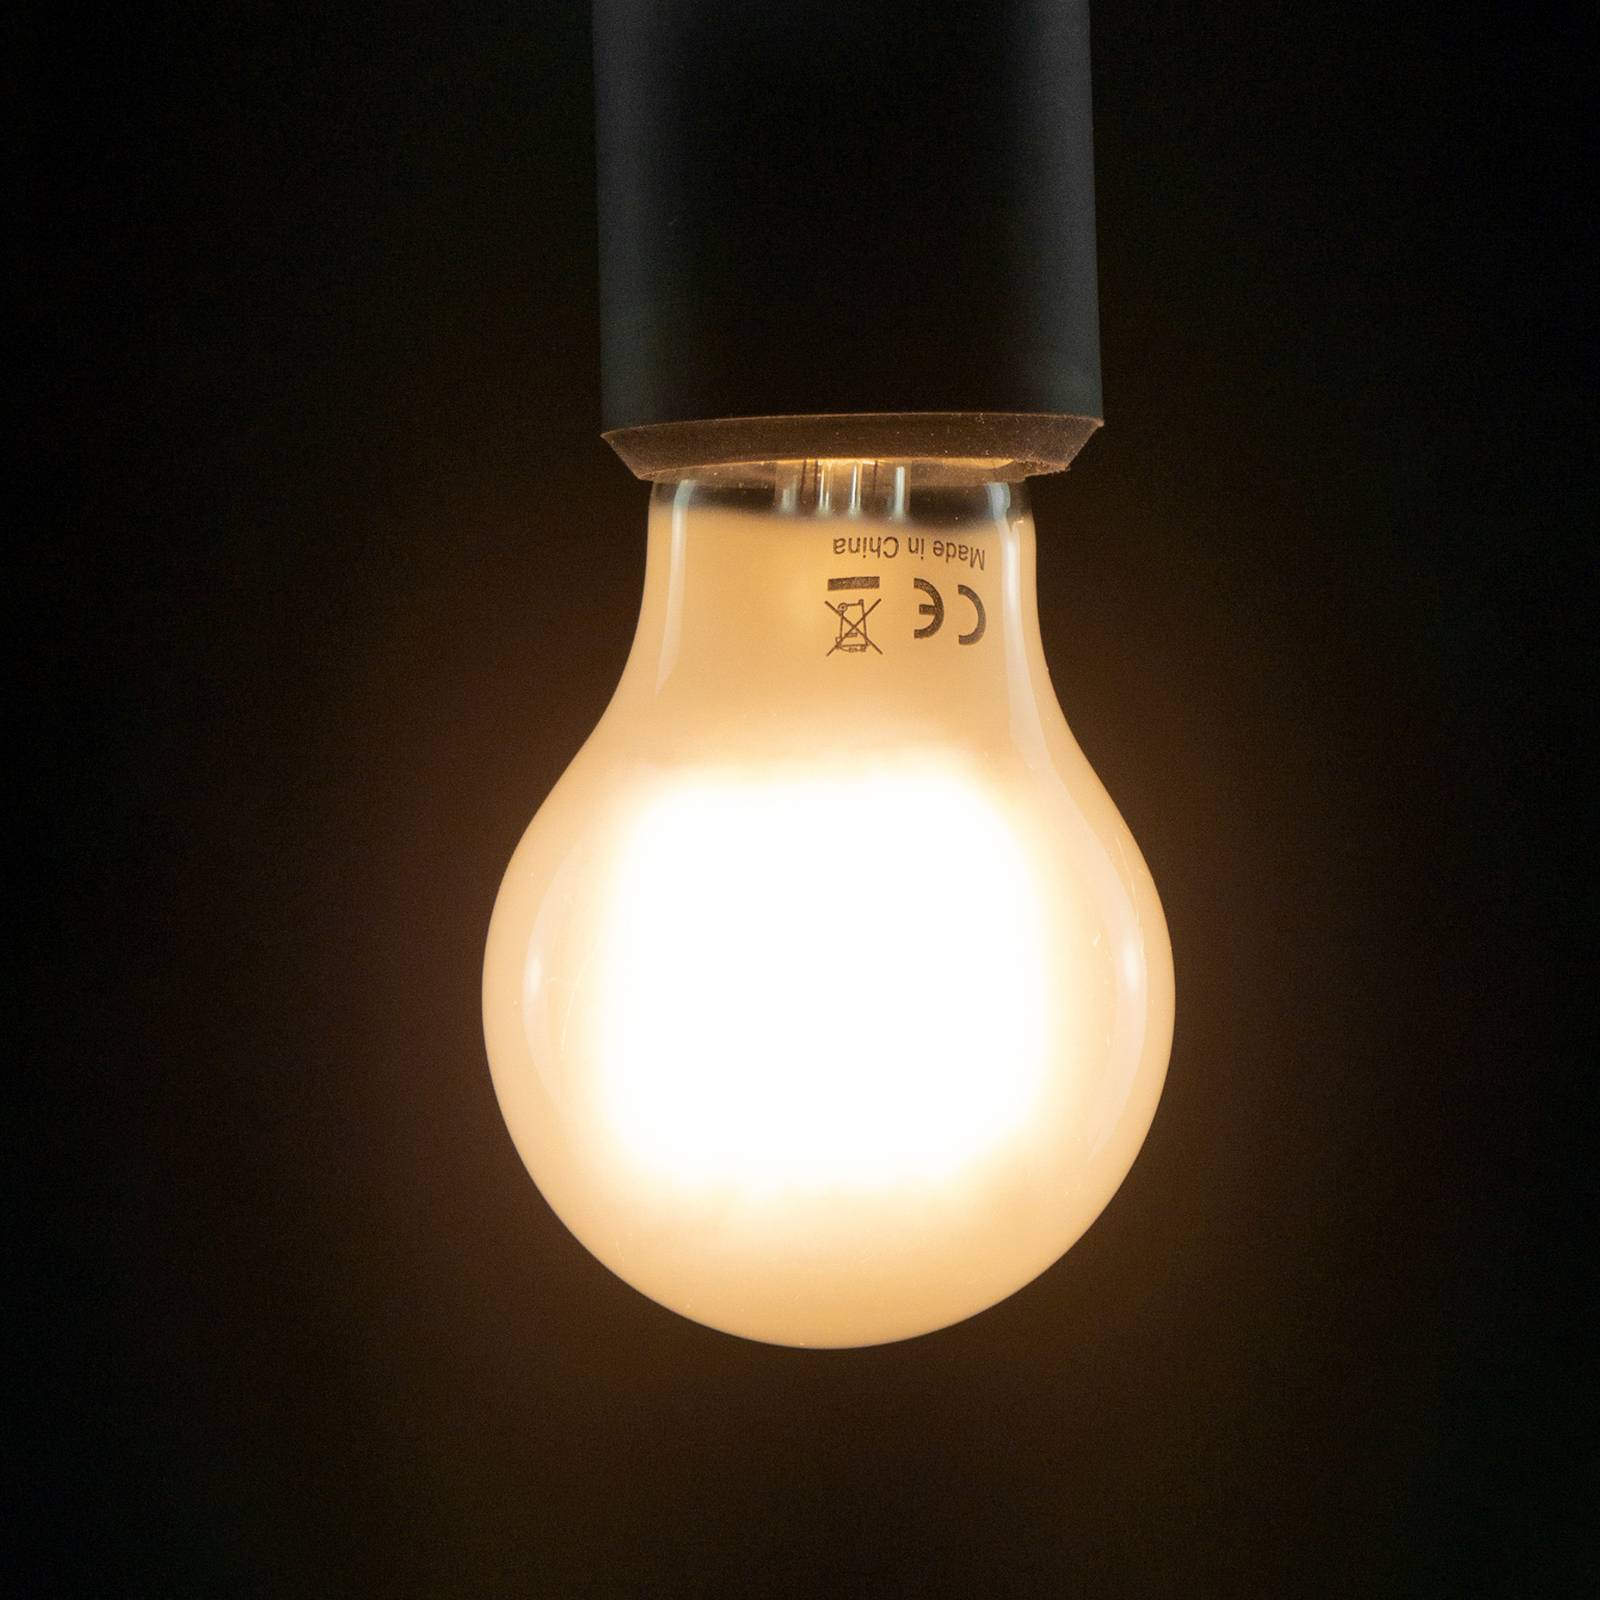 SEGULA LED lámpa E27 6,5W 927 dimmelhető matt